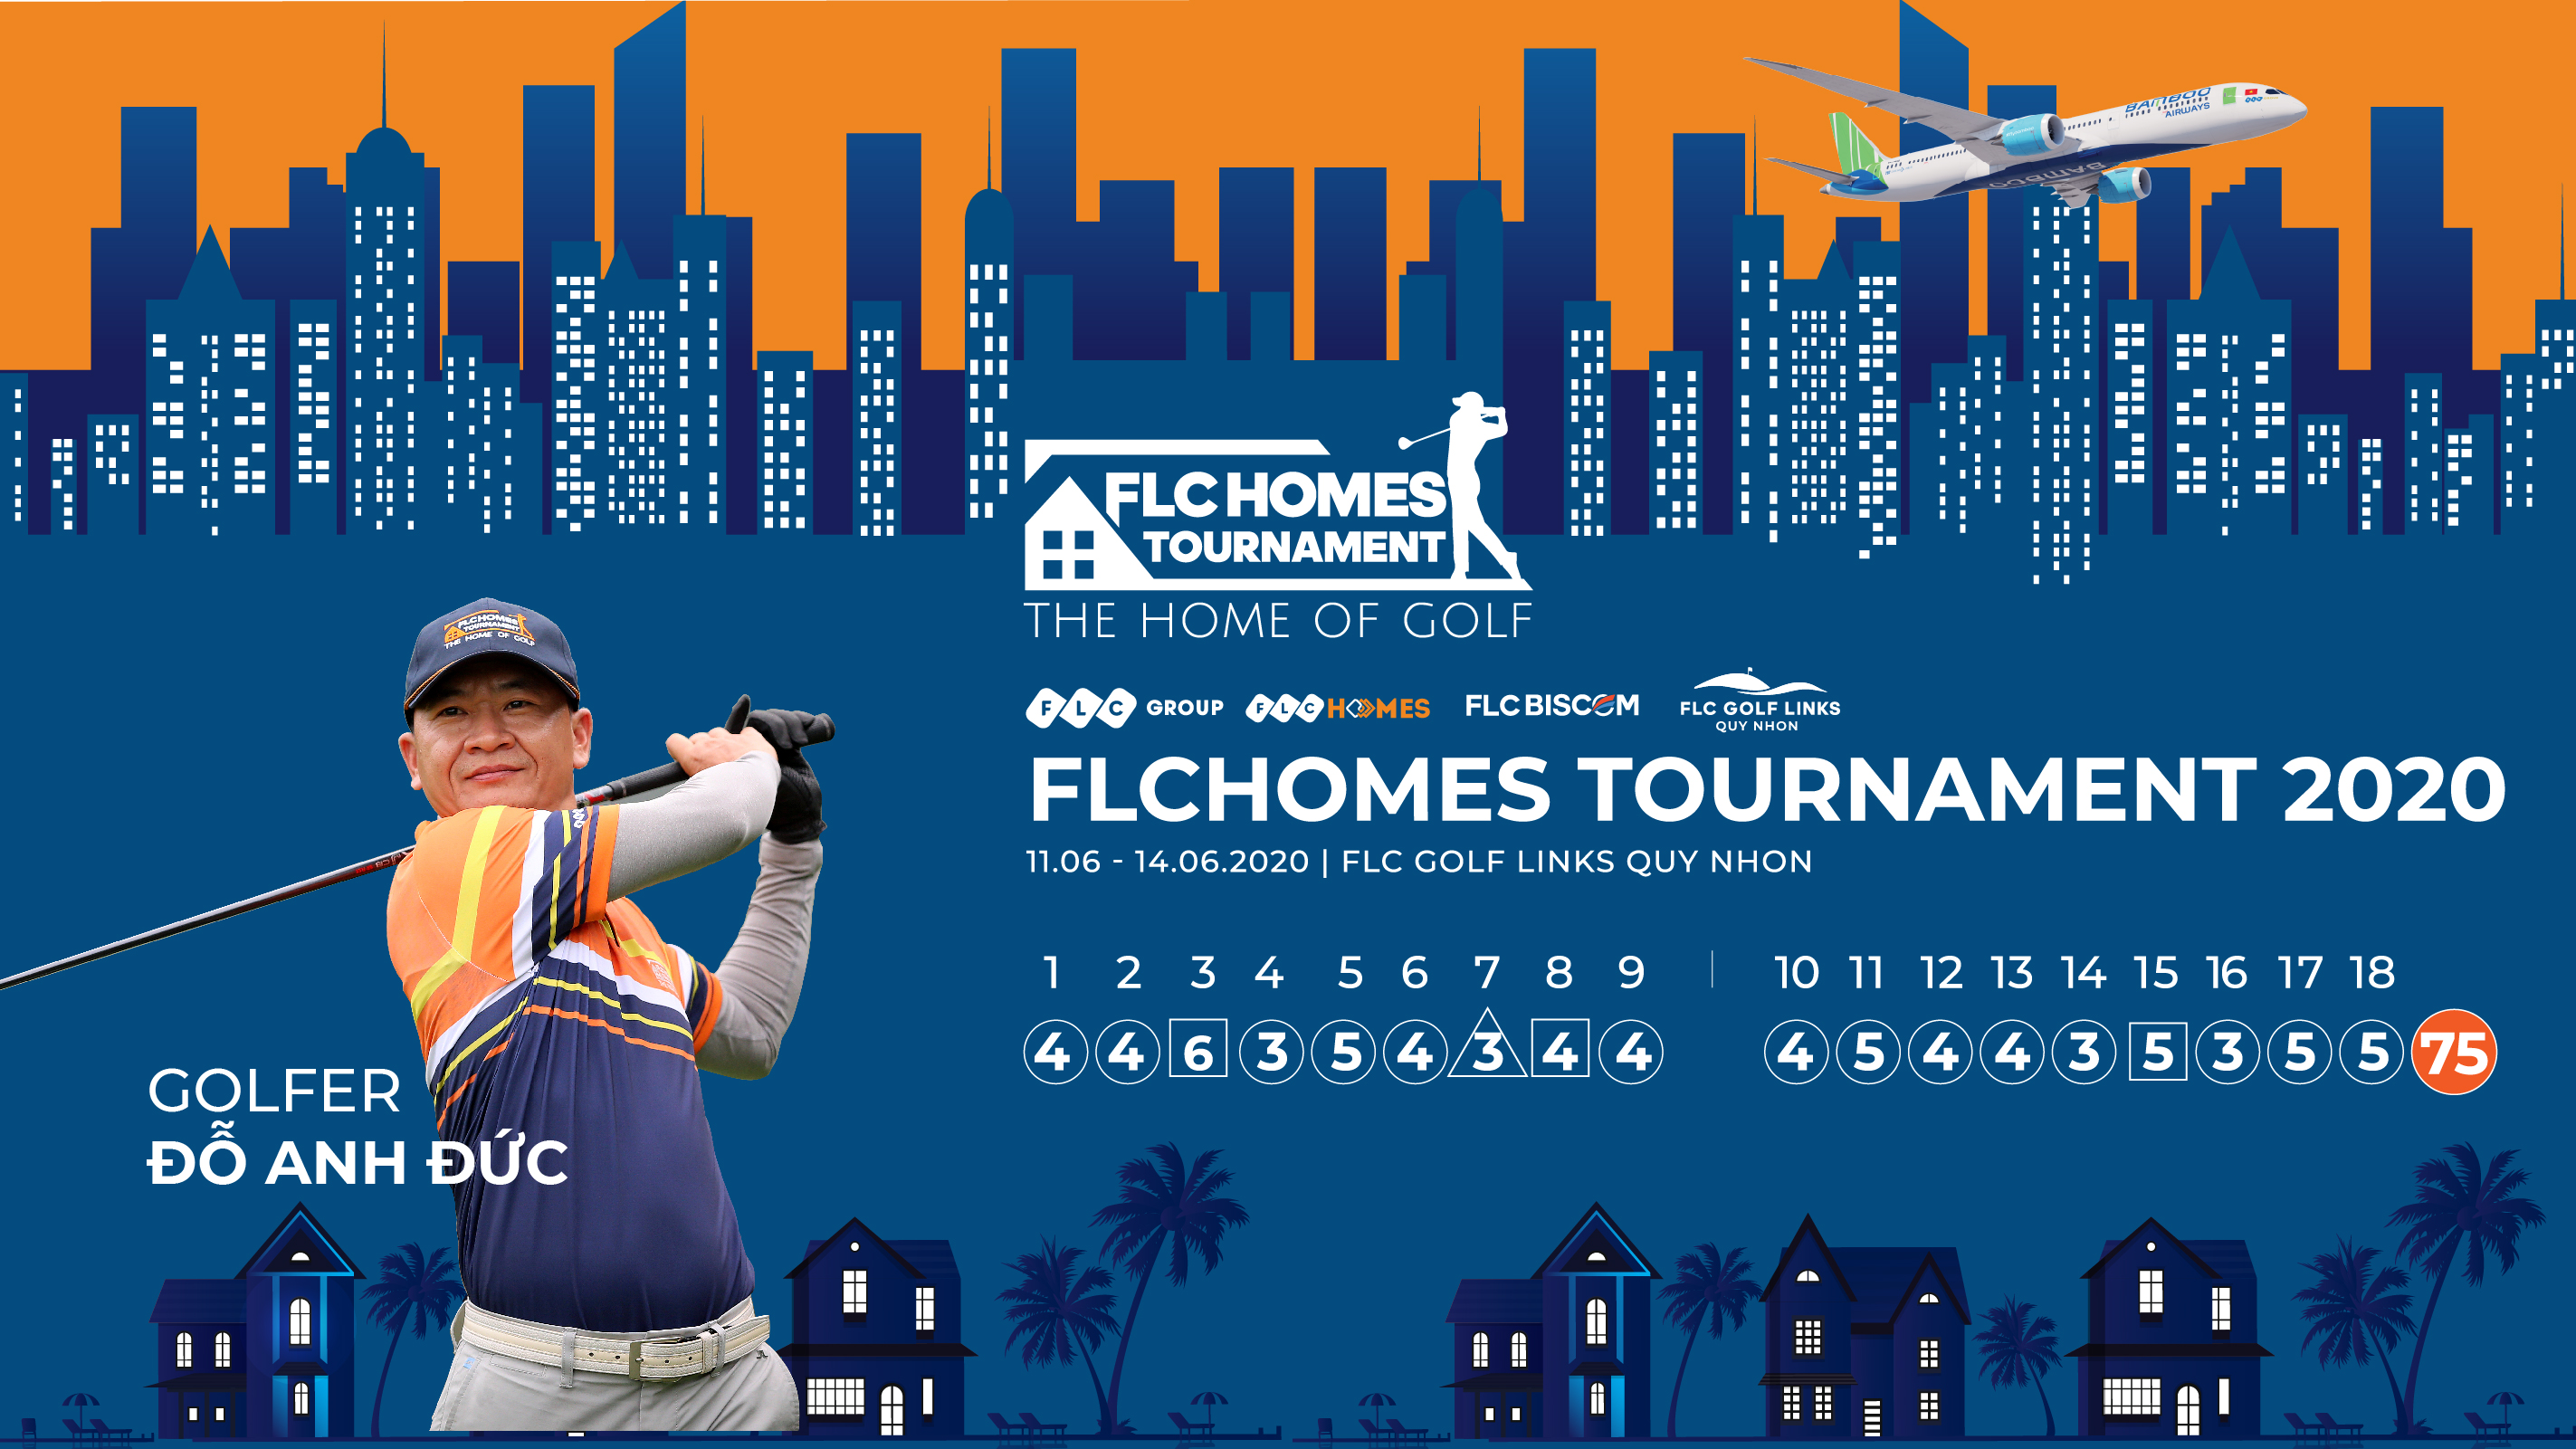 Nhà vô địch FLCHomes Tournament 2020 – Golfer Đỗ Anh Đức